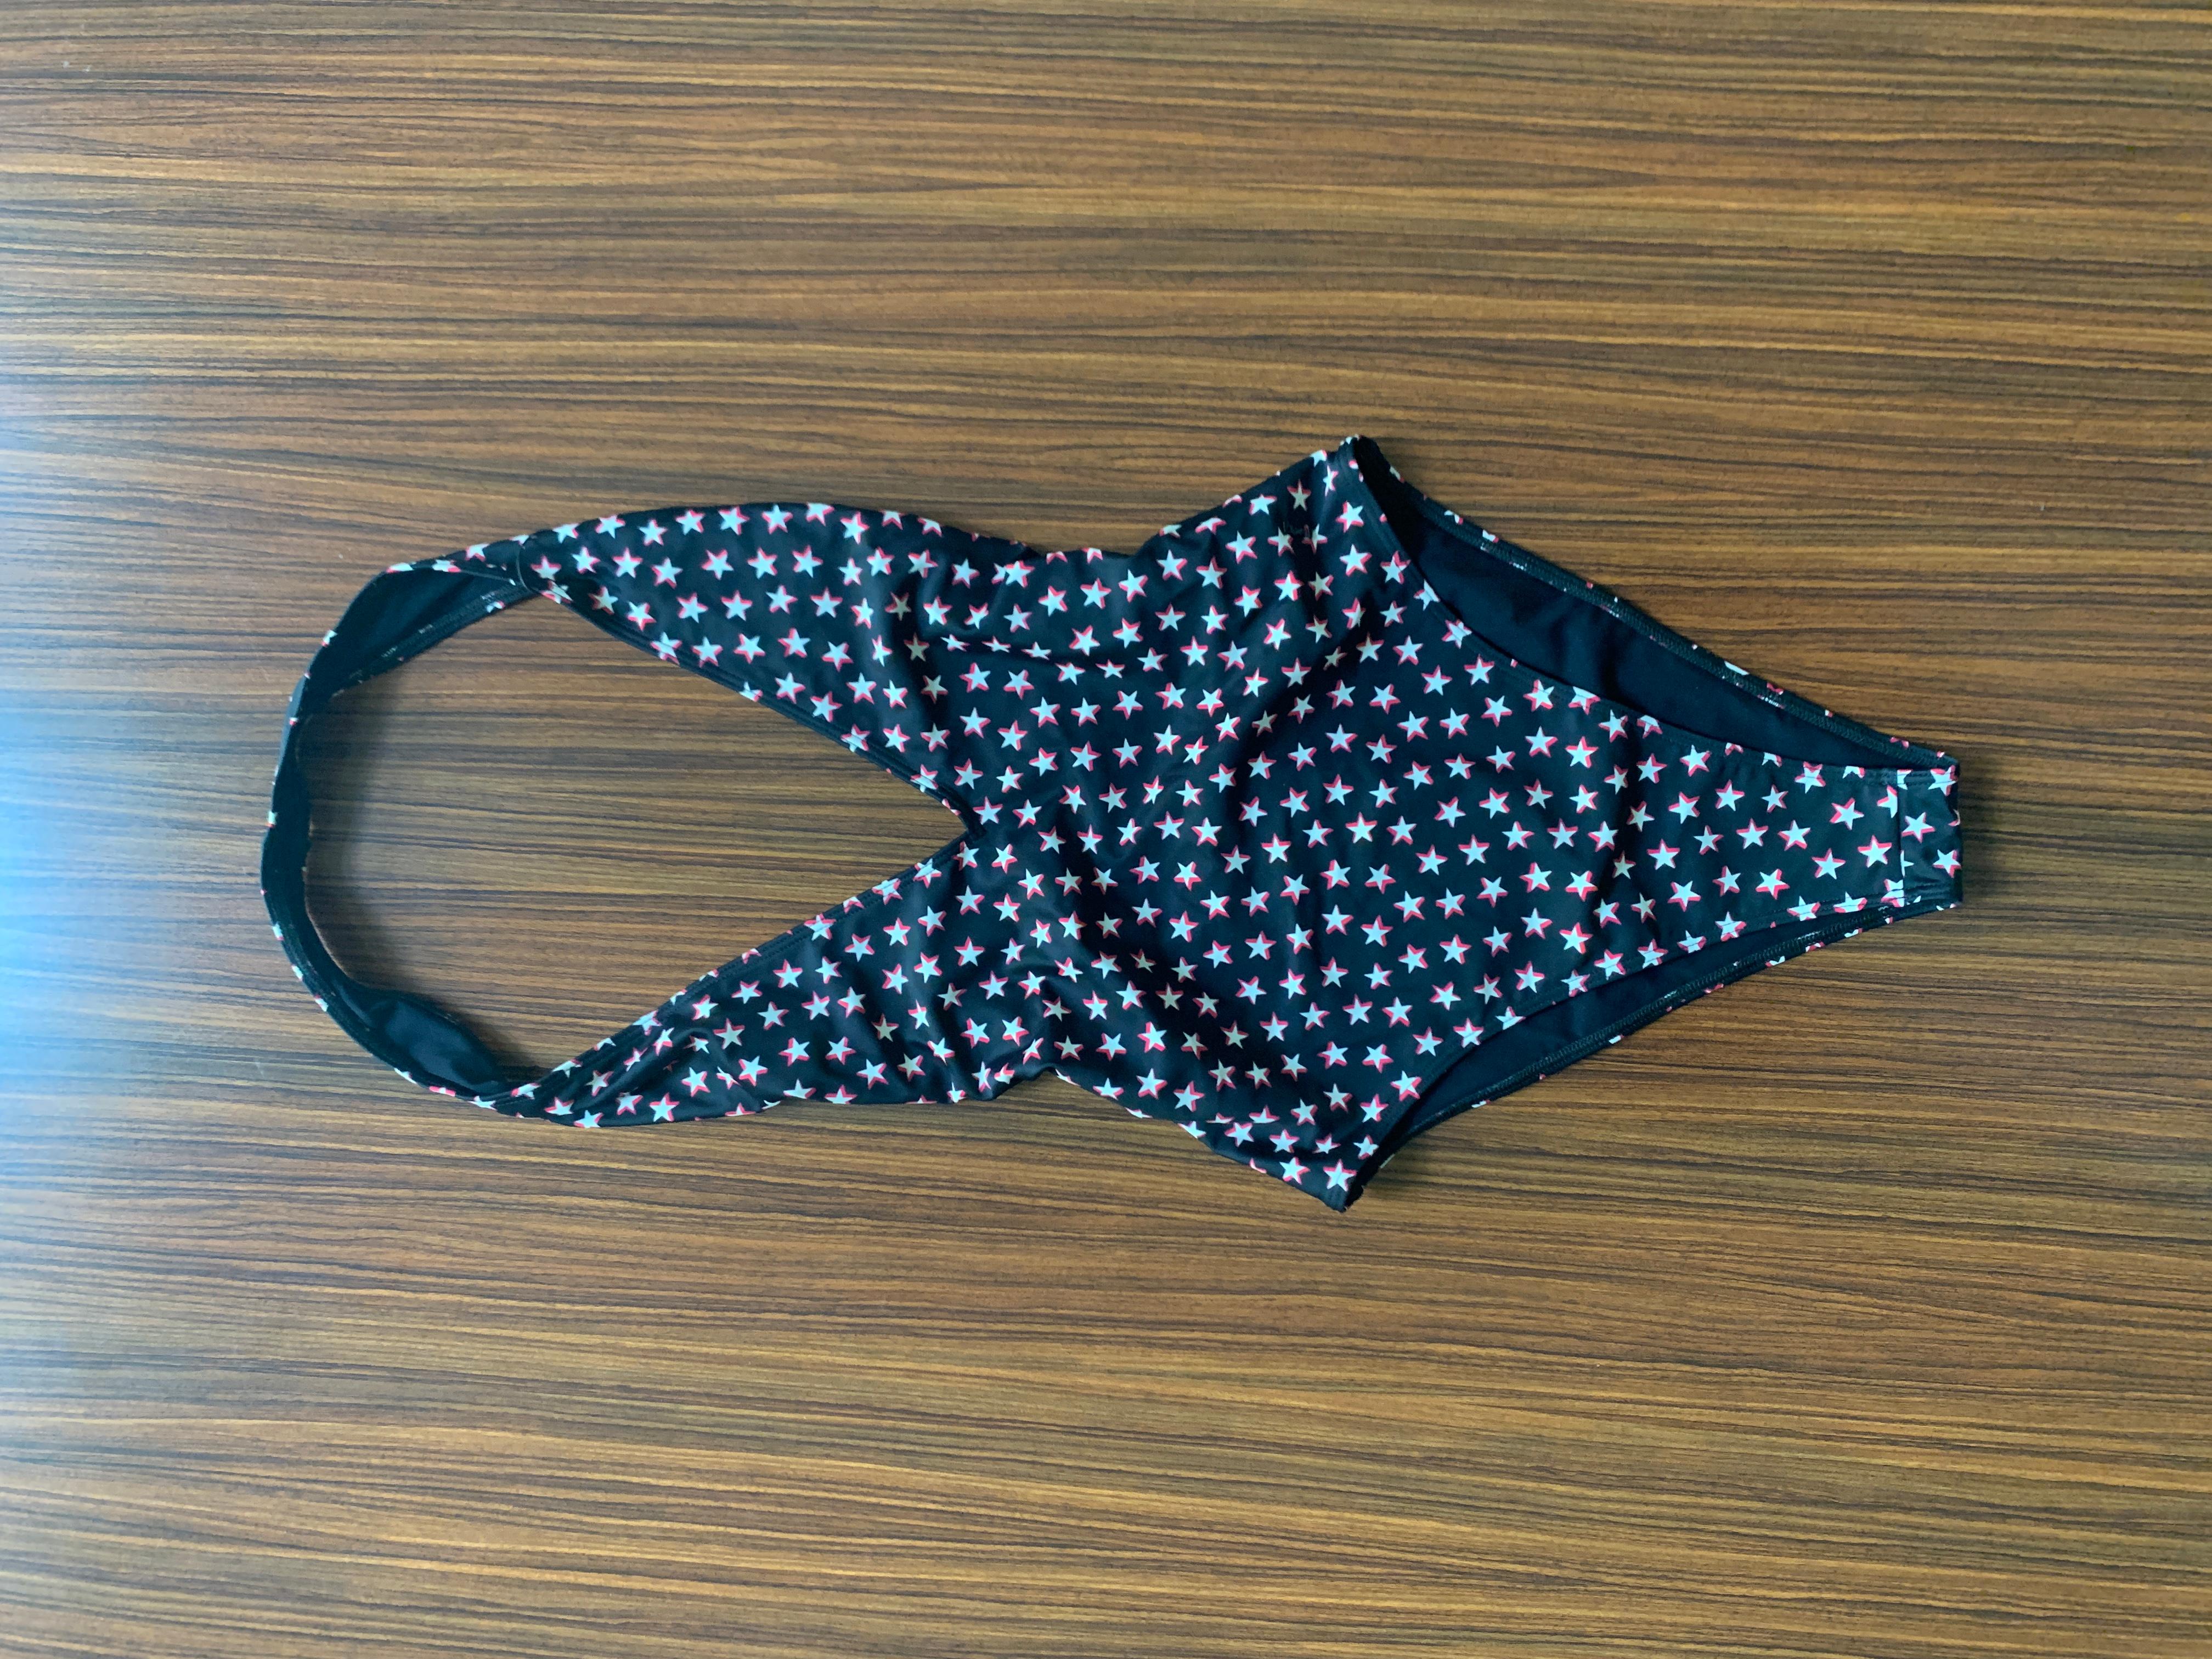 Yves Saint Laurent schwarzer, einteiliger Badeanzug mit rotem und weißem Sternendruck. Schmeichelhaft hoch geschnittene Beine und tief ausgeschnittener Rücken. Kleines YSL-Logo aus Metall an der Hüfte. 

82% Polyamid, 18% Elasthan.

Hergestellt in